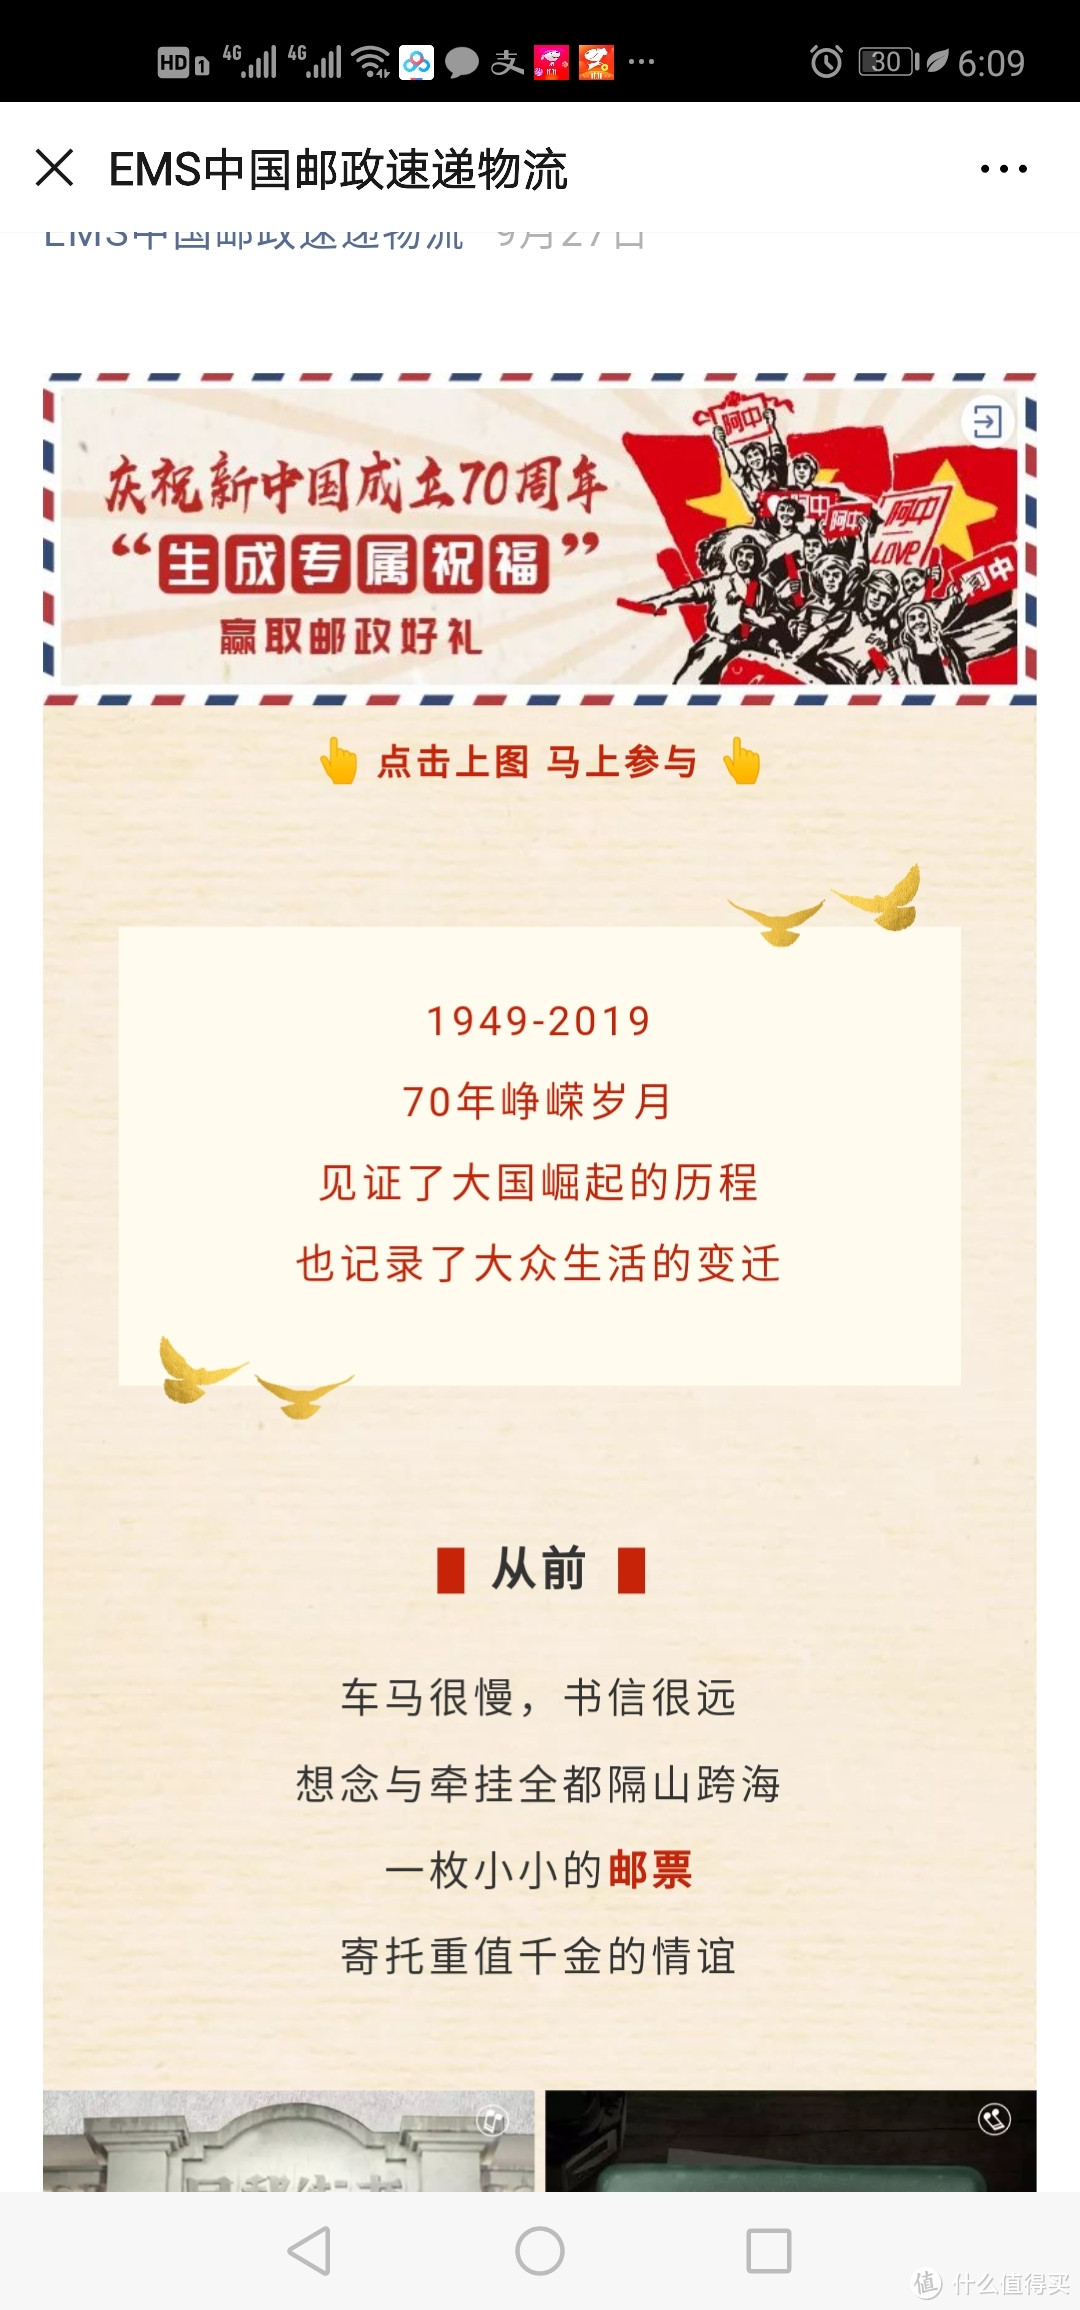 中奖邮政大飞机纪念新中国70周年